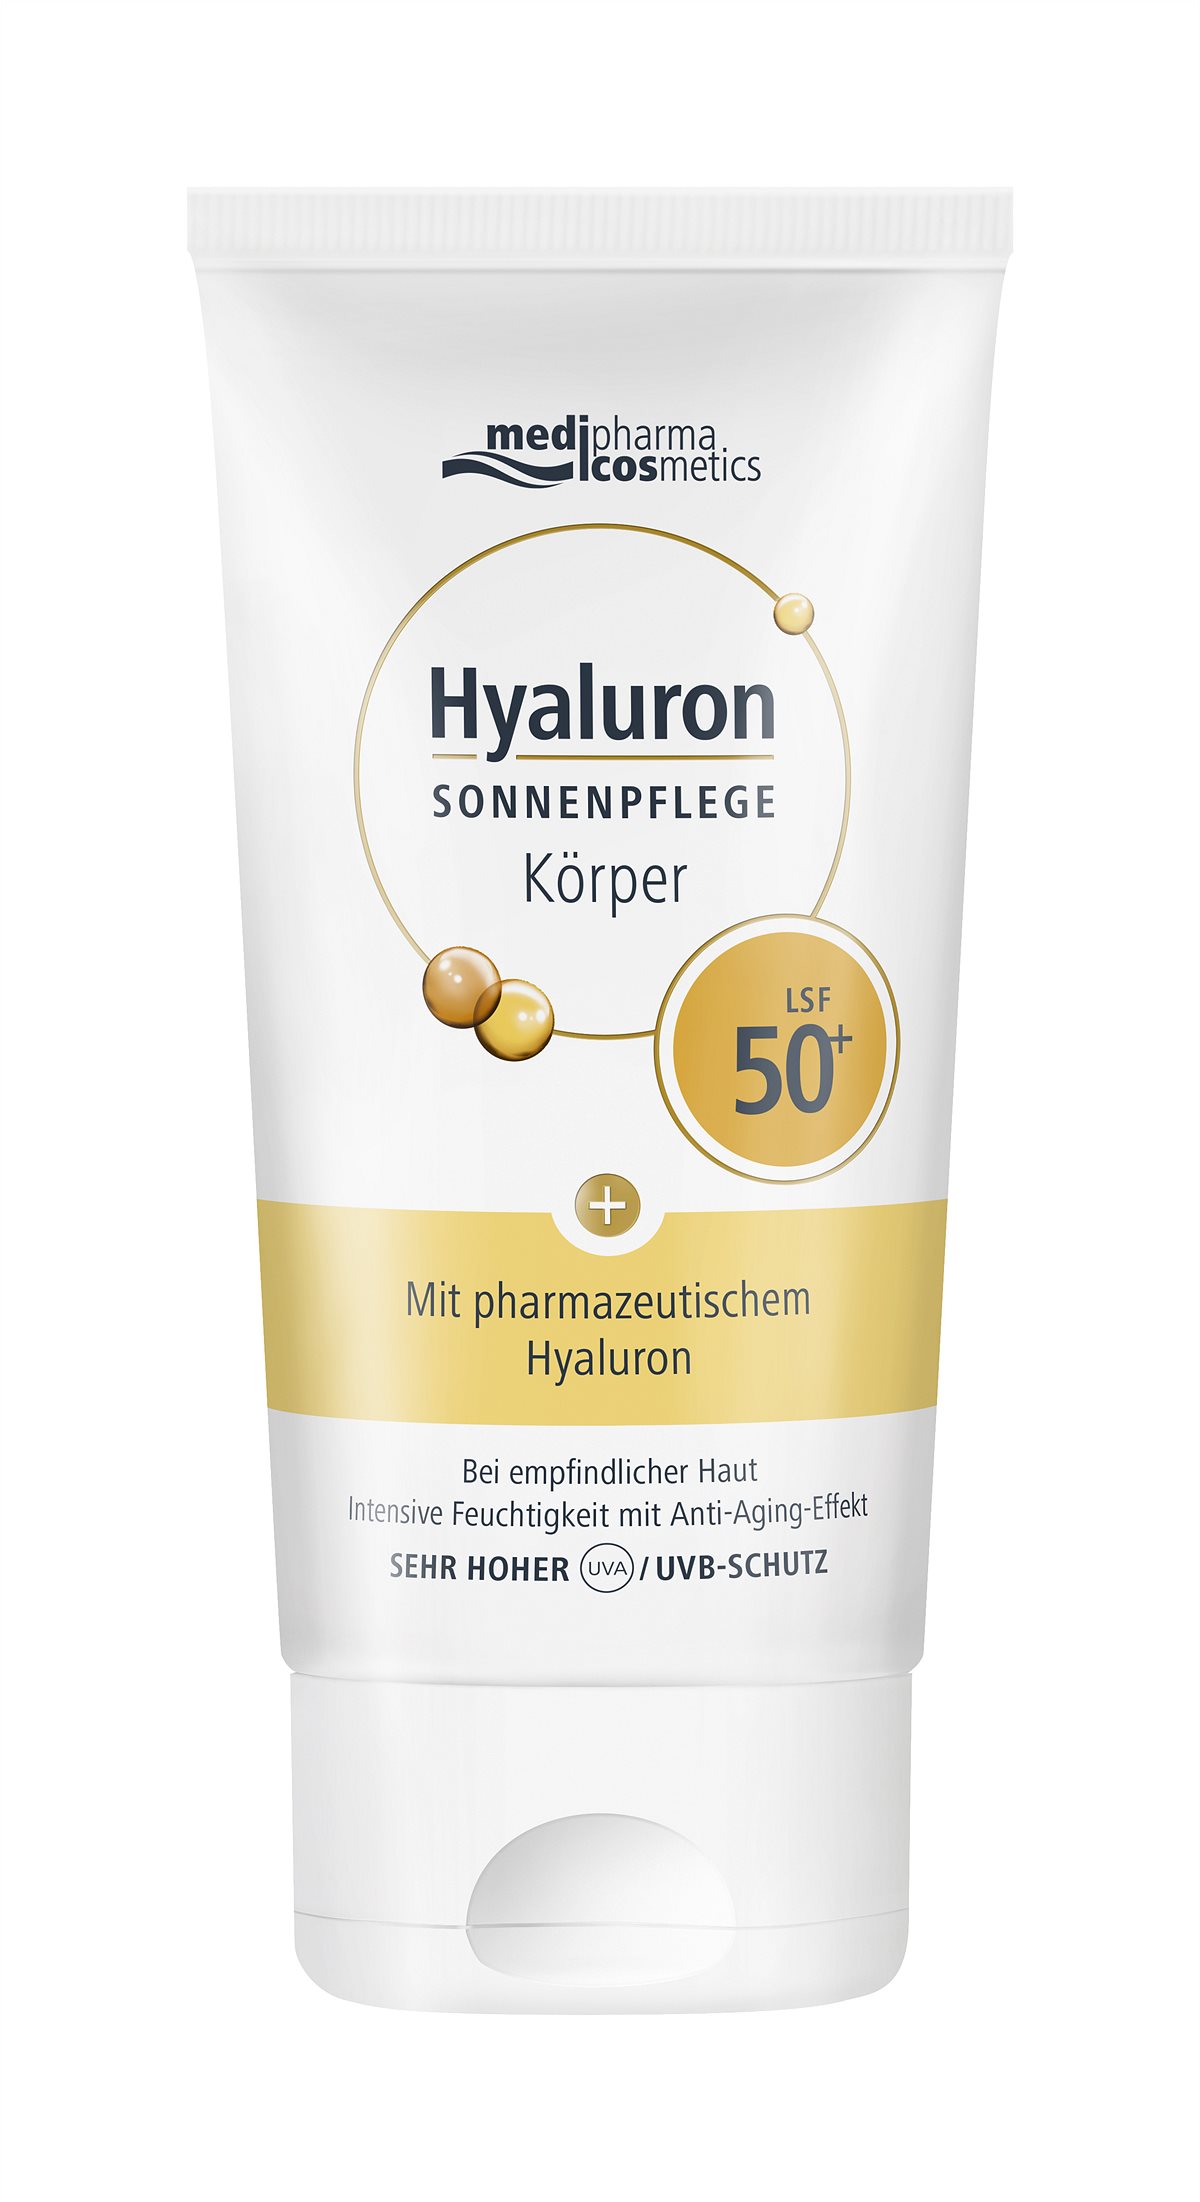 medipharma cosmetics Hyaluron SONNENPFLEGE Koerper LSF50